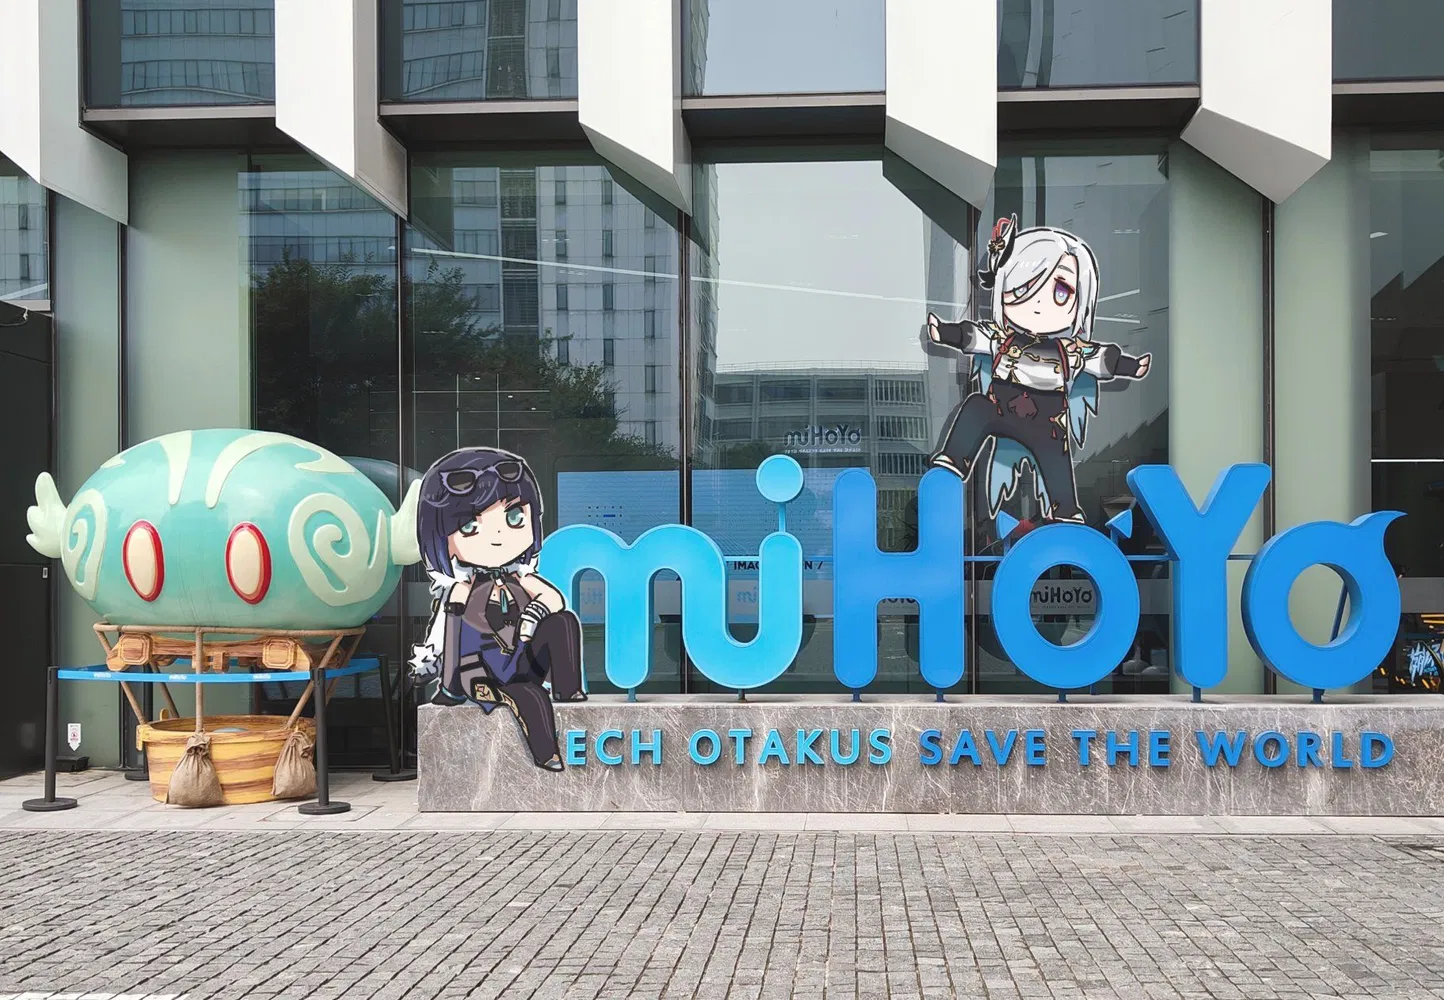 mihoyo headquarters